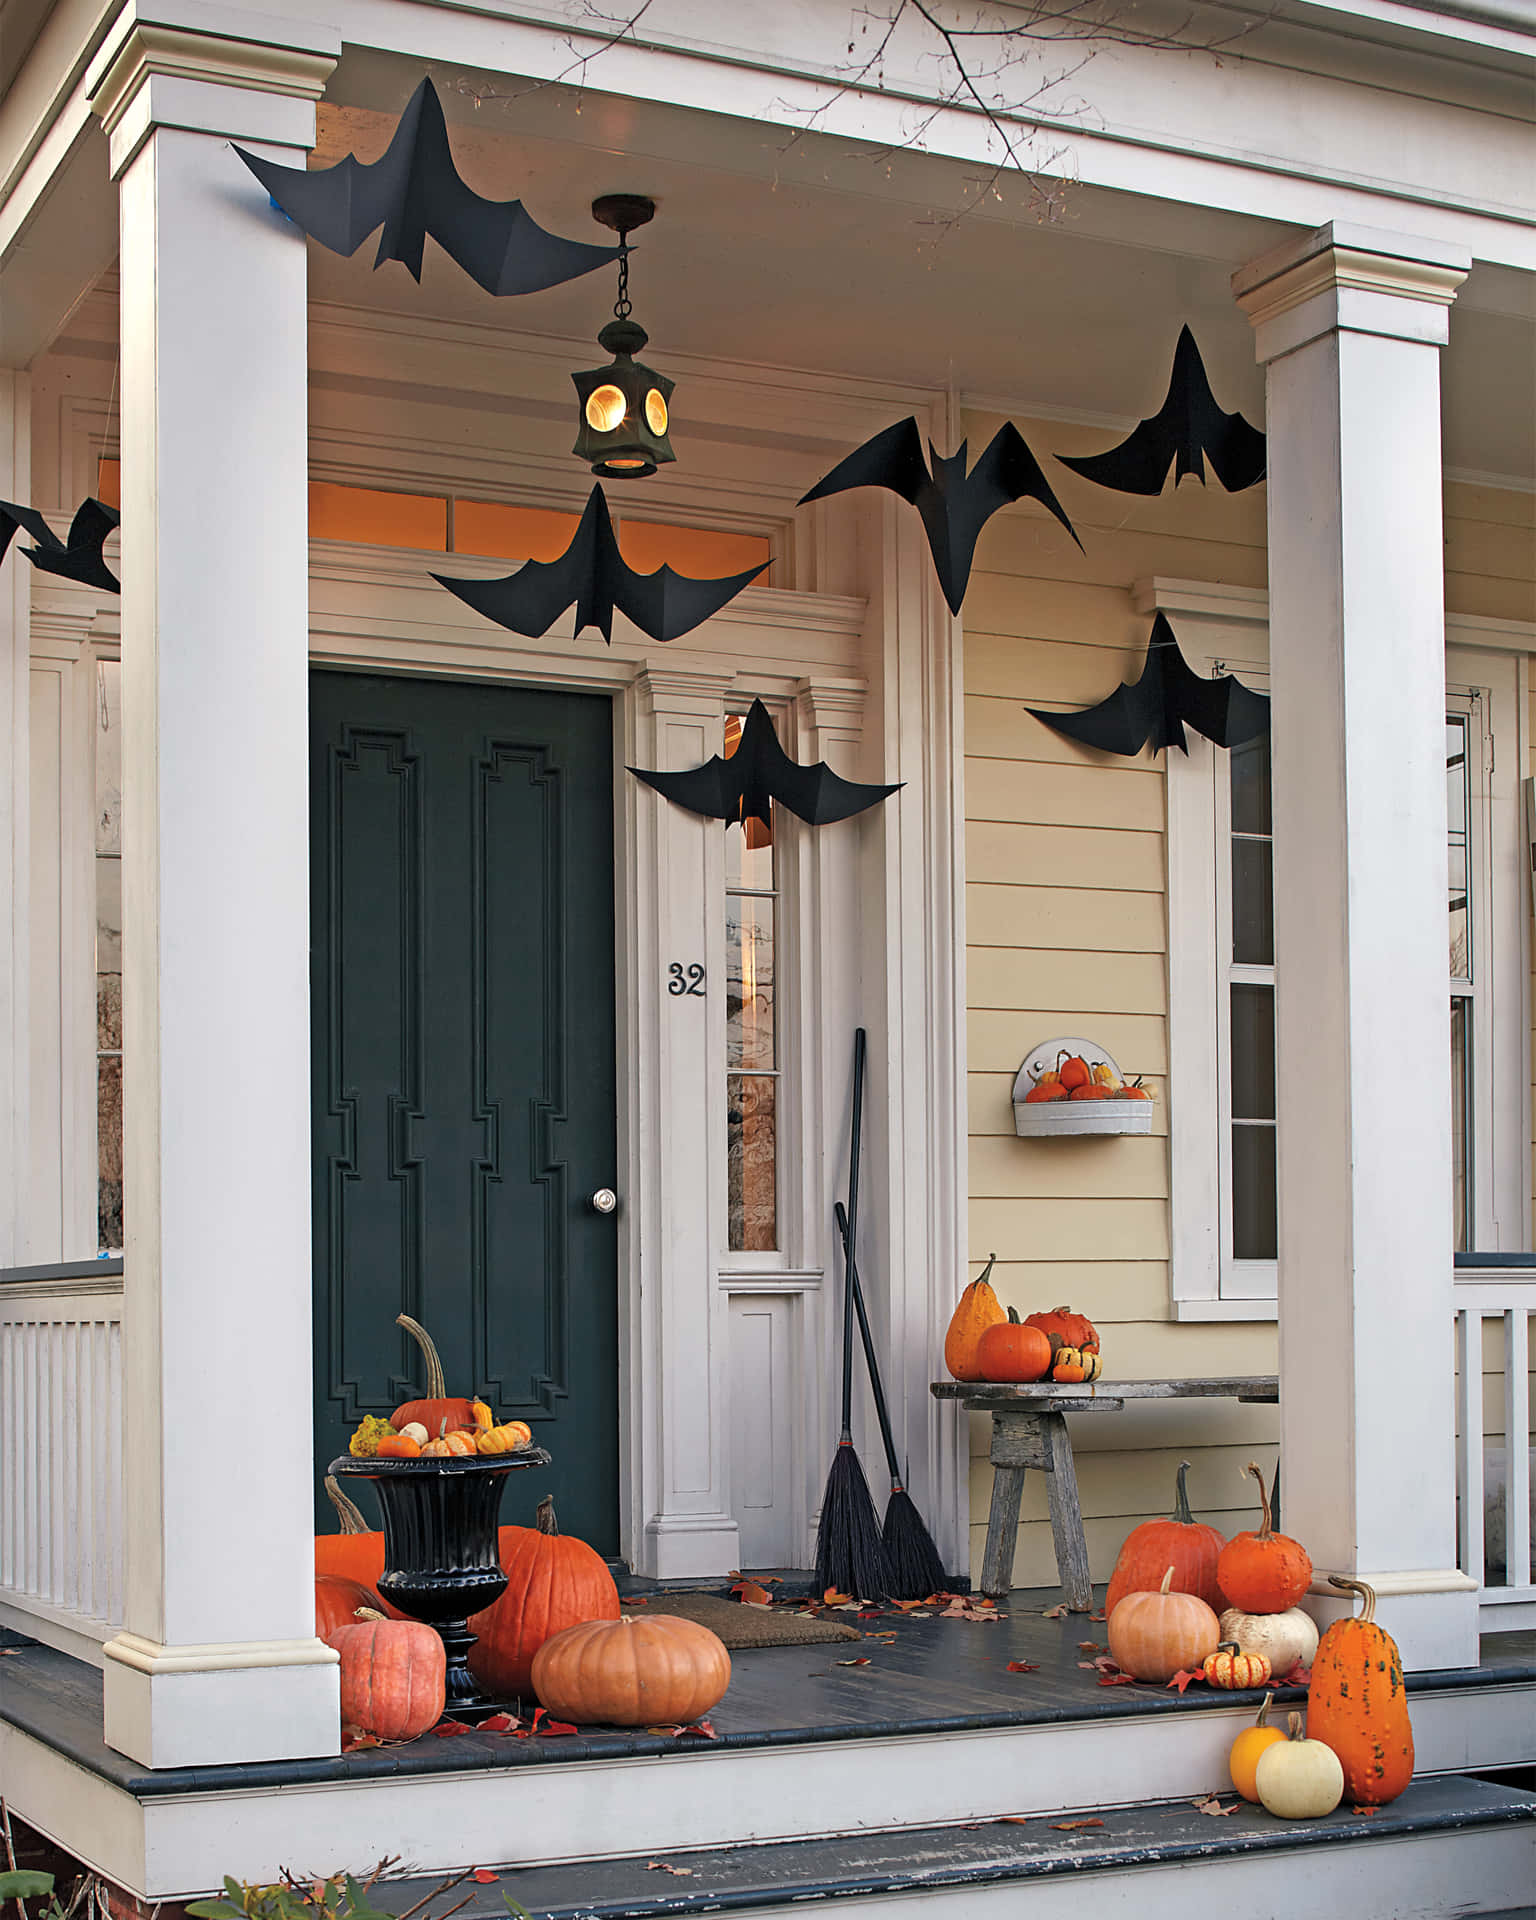 Immaginidi Decorazione A Forma Di Pipistrello Per Halloween